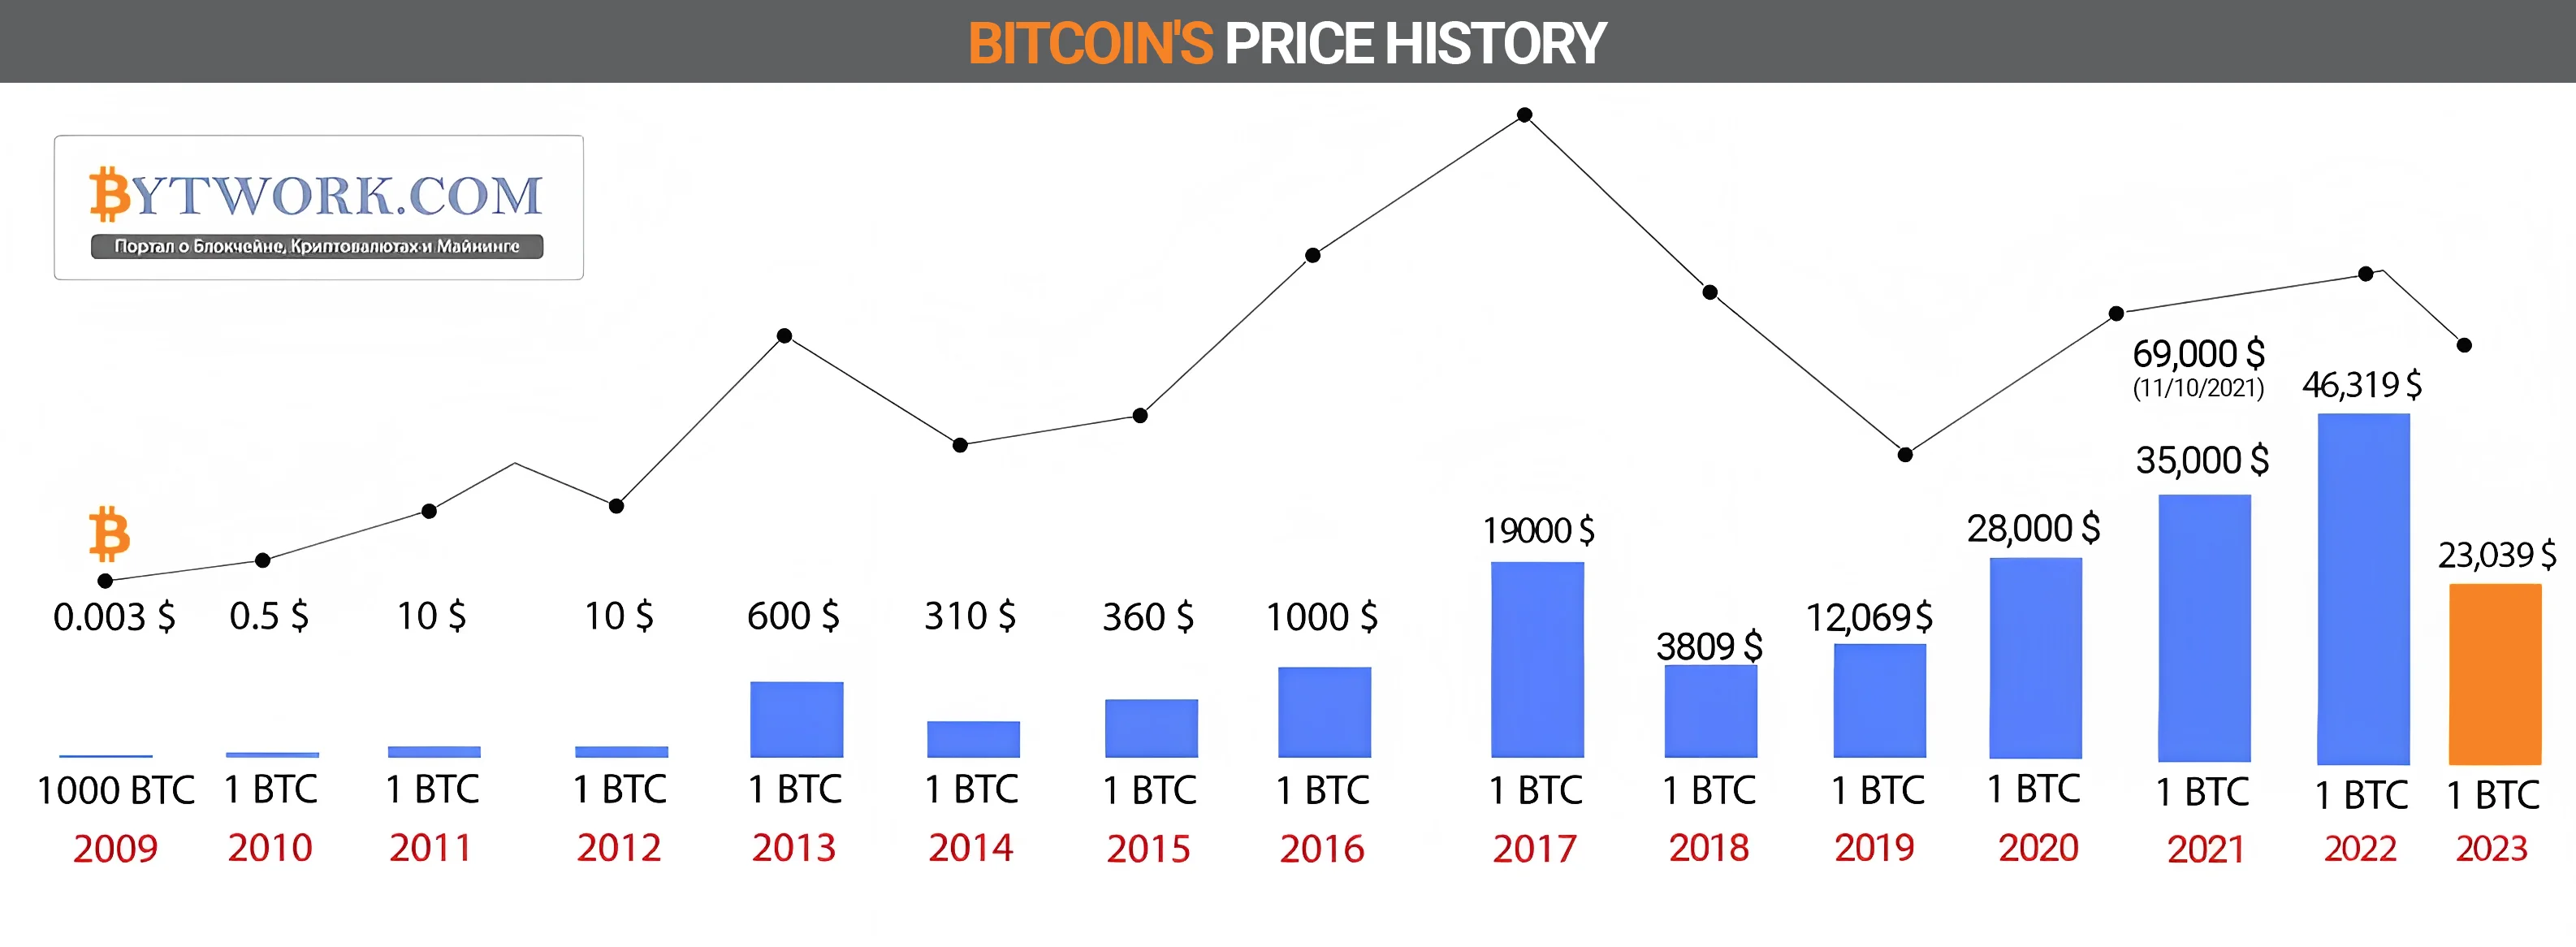 BTC price history 2009-2023